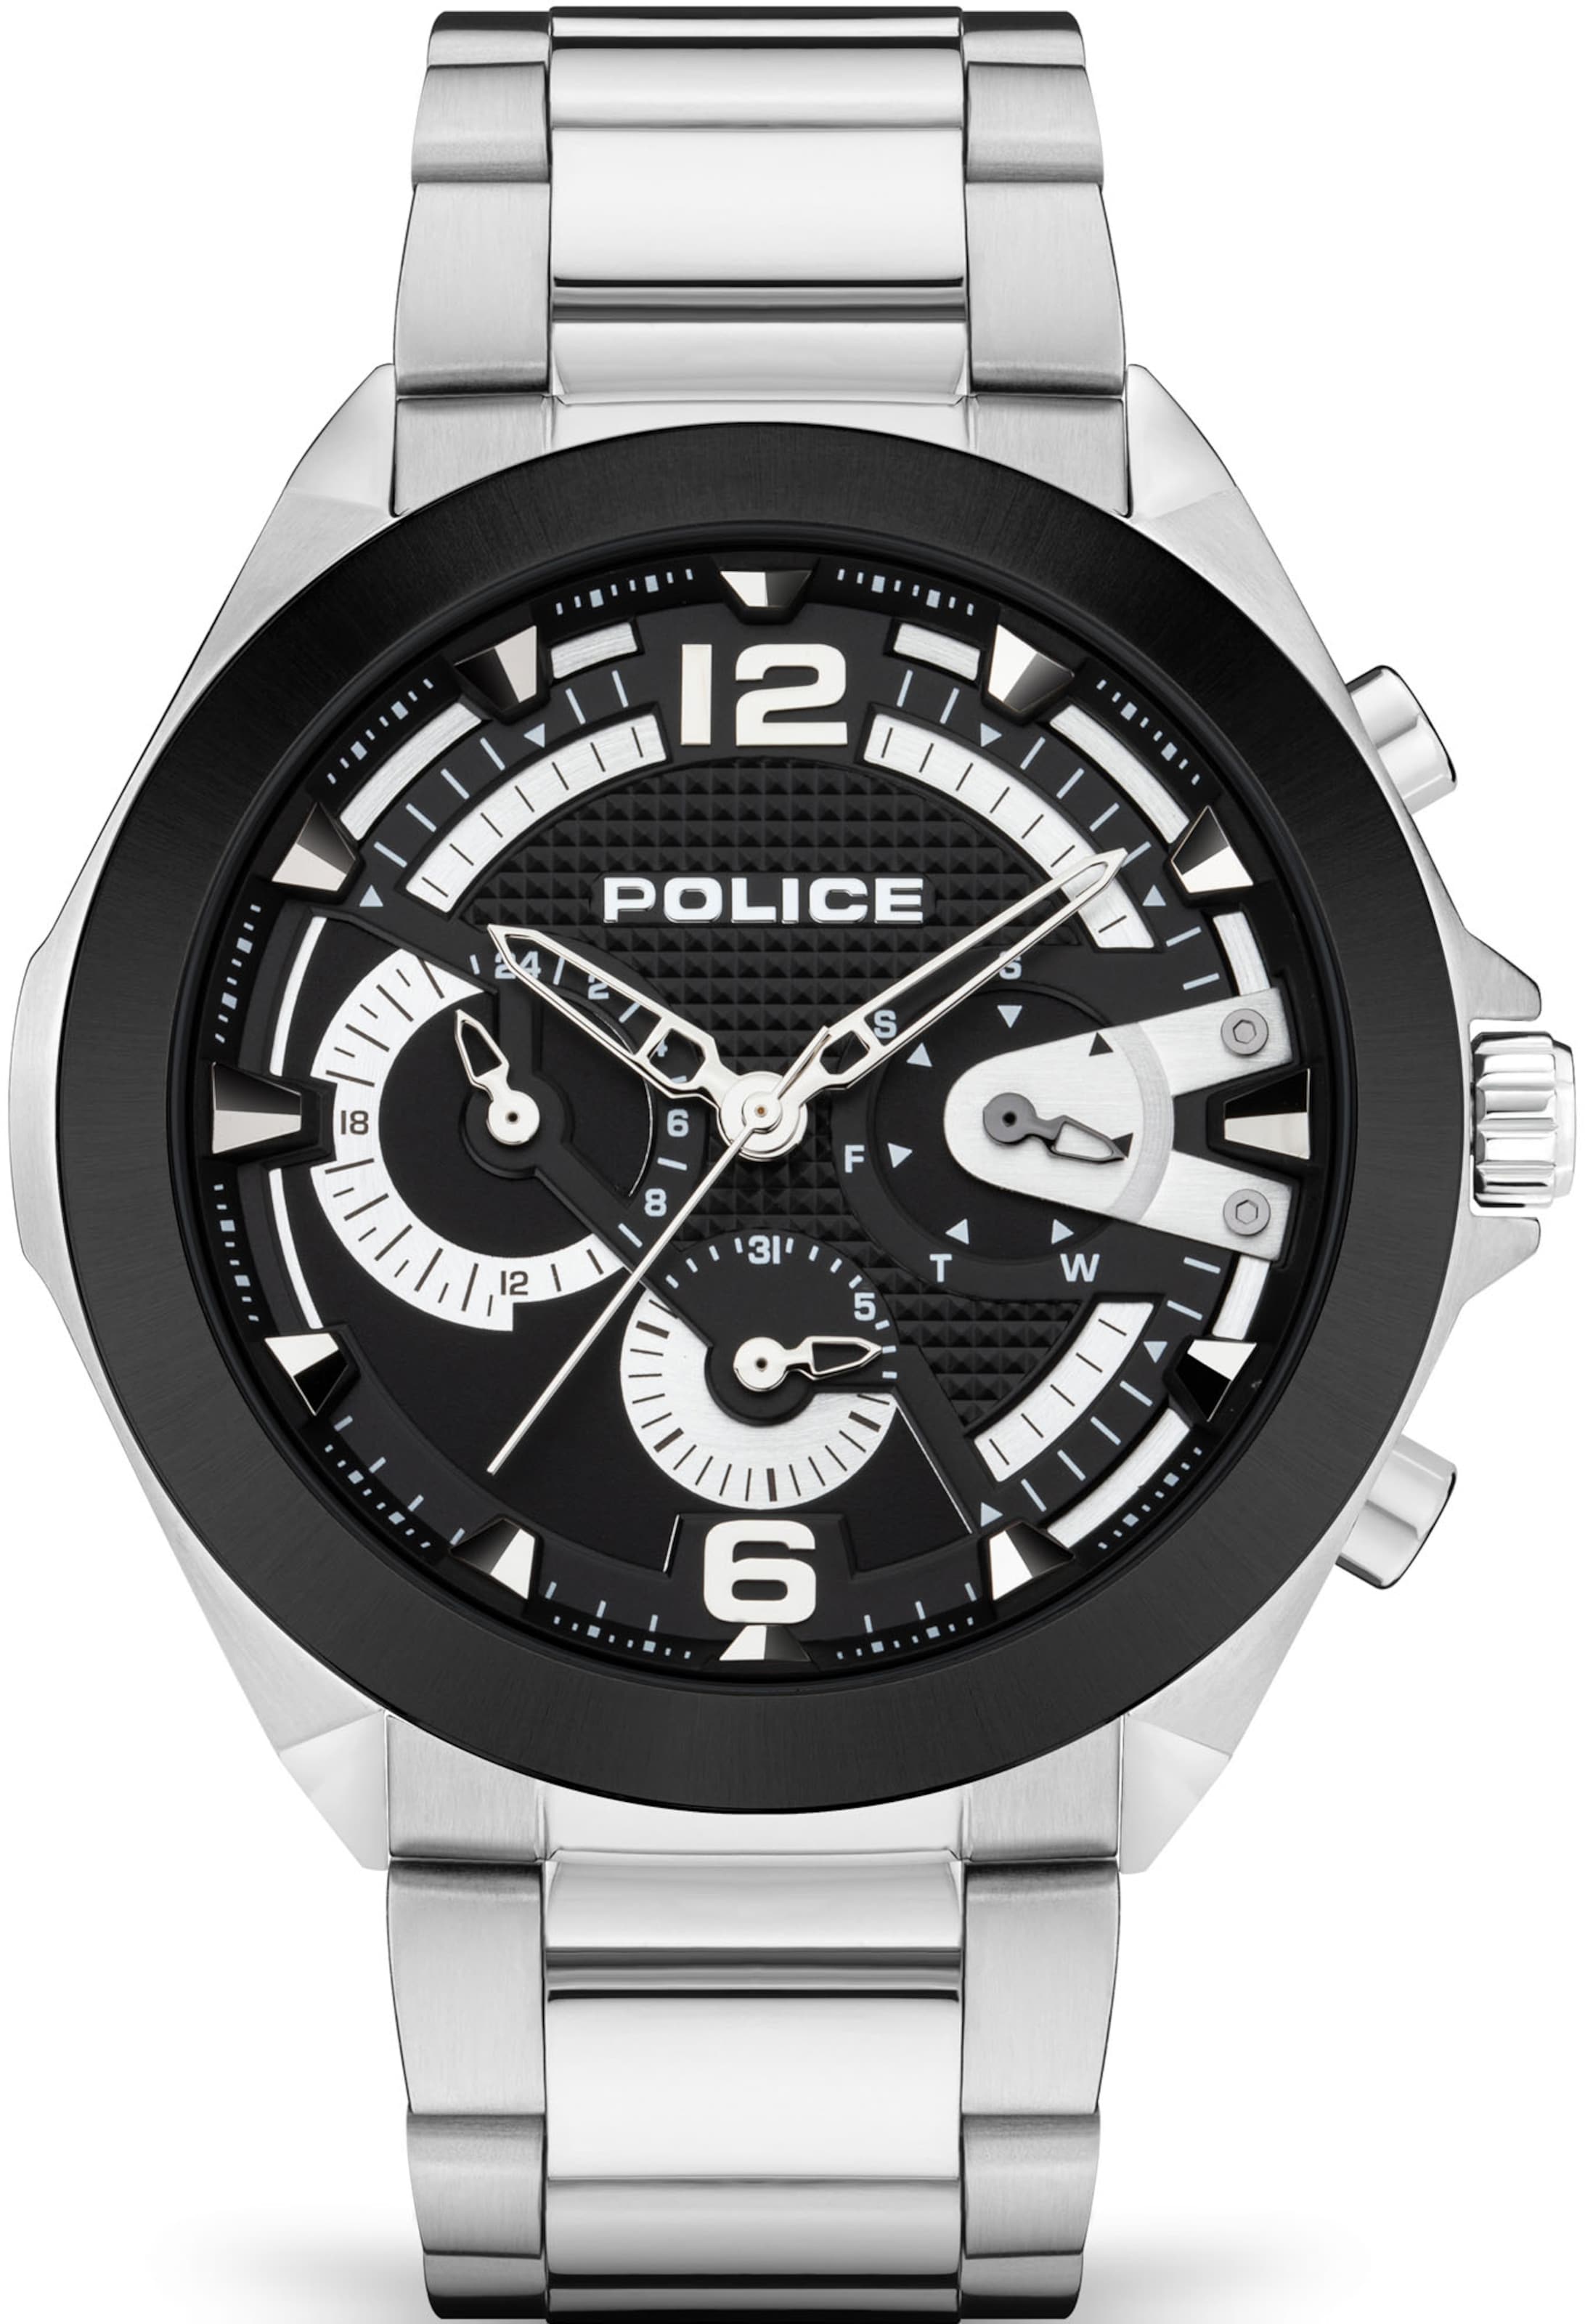 Männer Uhren POLICE Uhr in Silber - IS41207